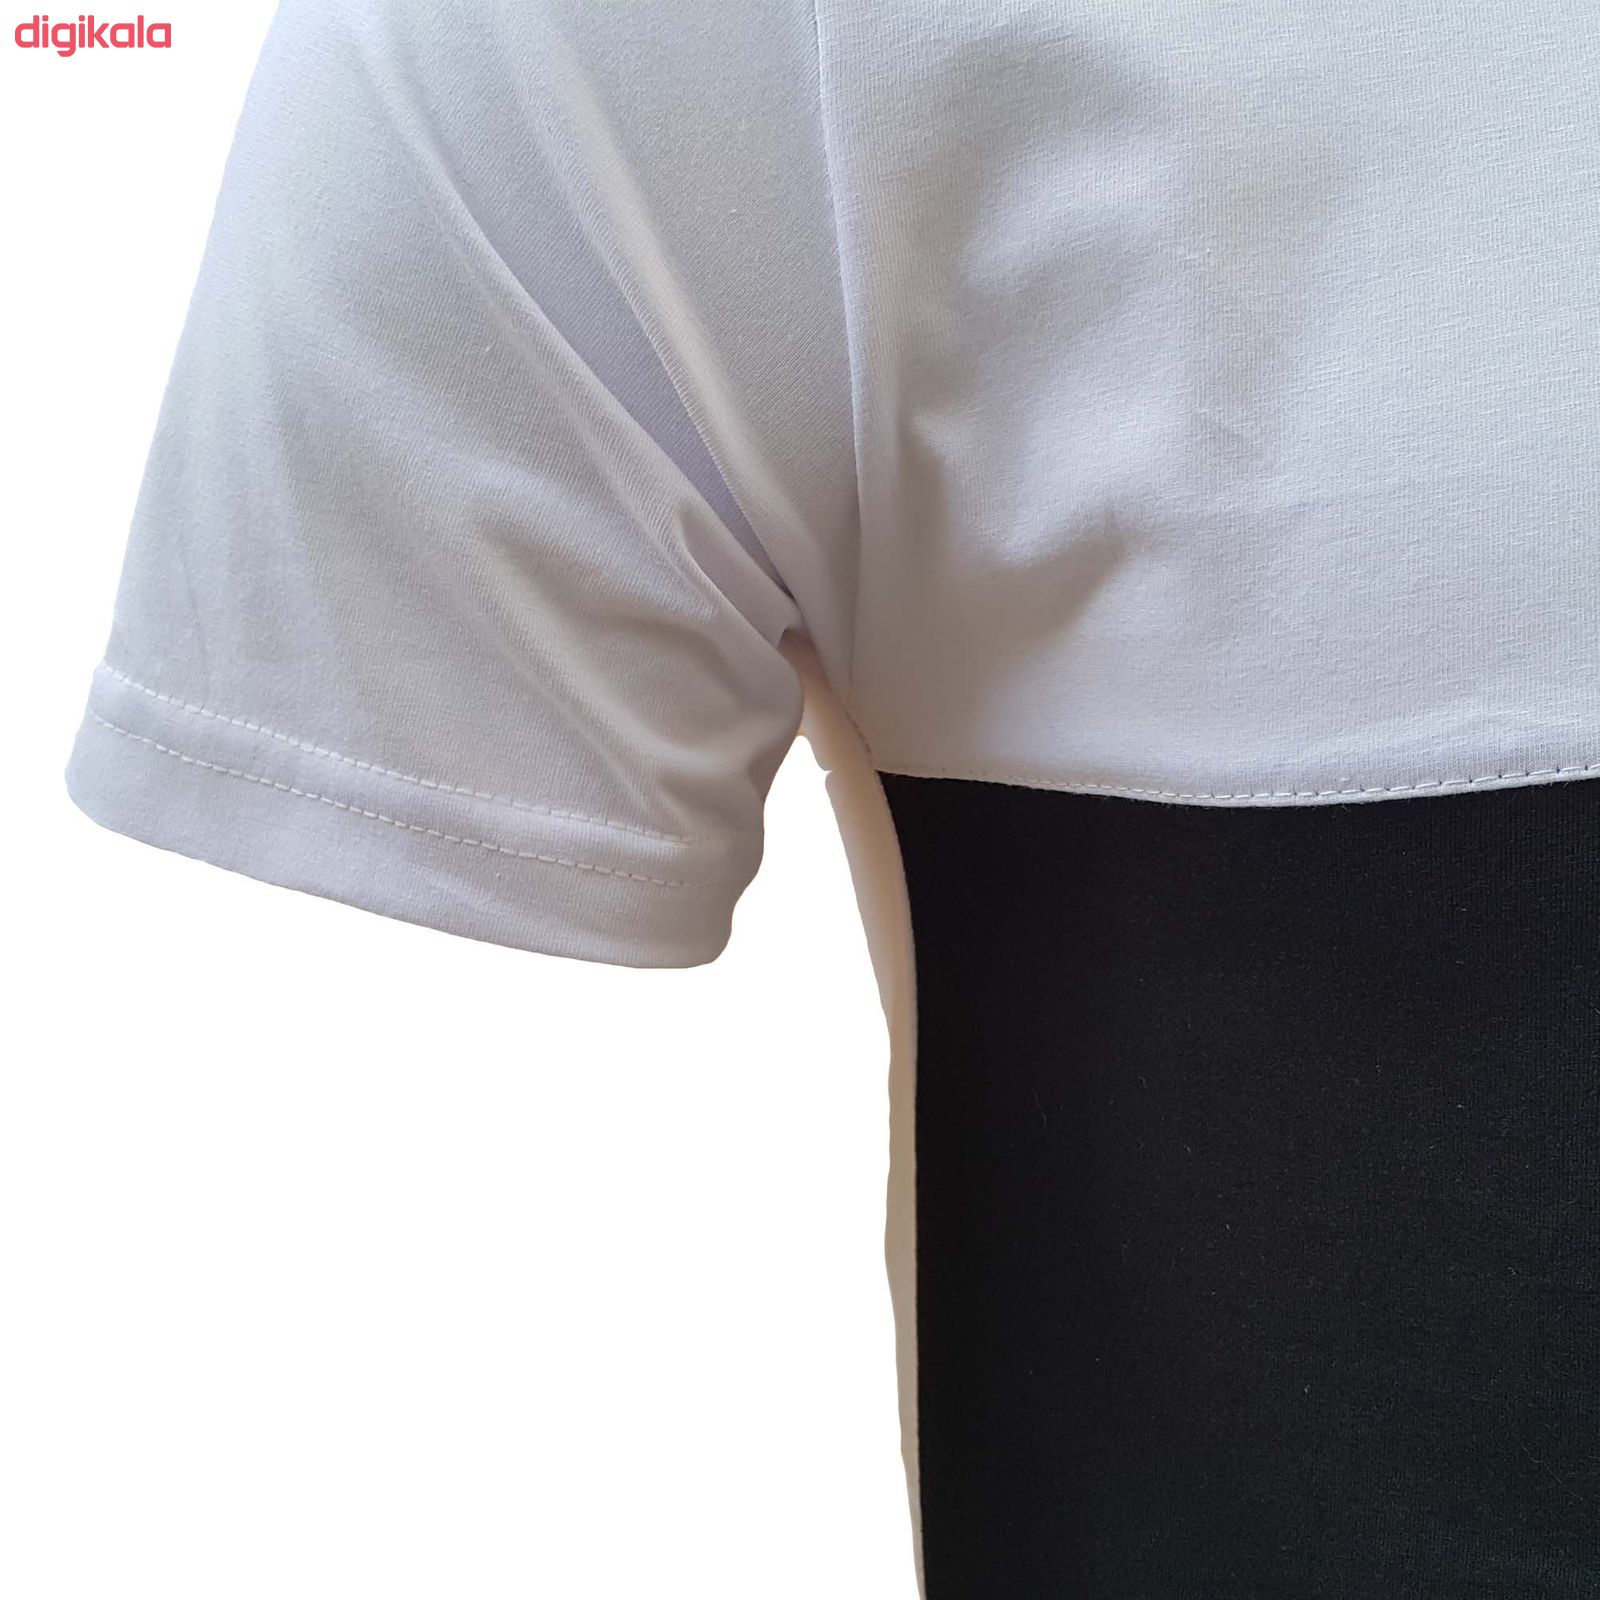  تی شرت آستین کوتاه مردانه طرح آژاکس کد A264Wرنگ سفید